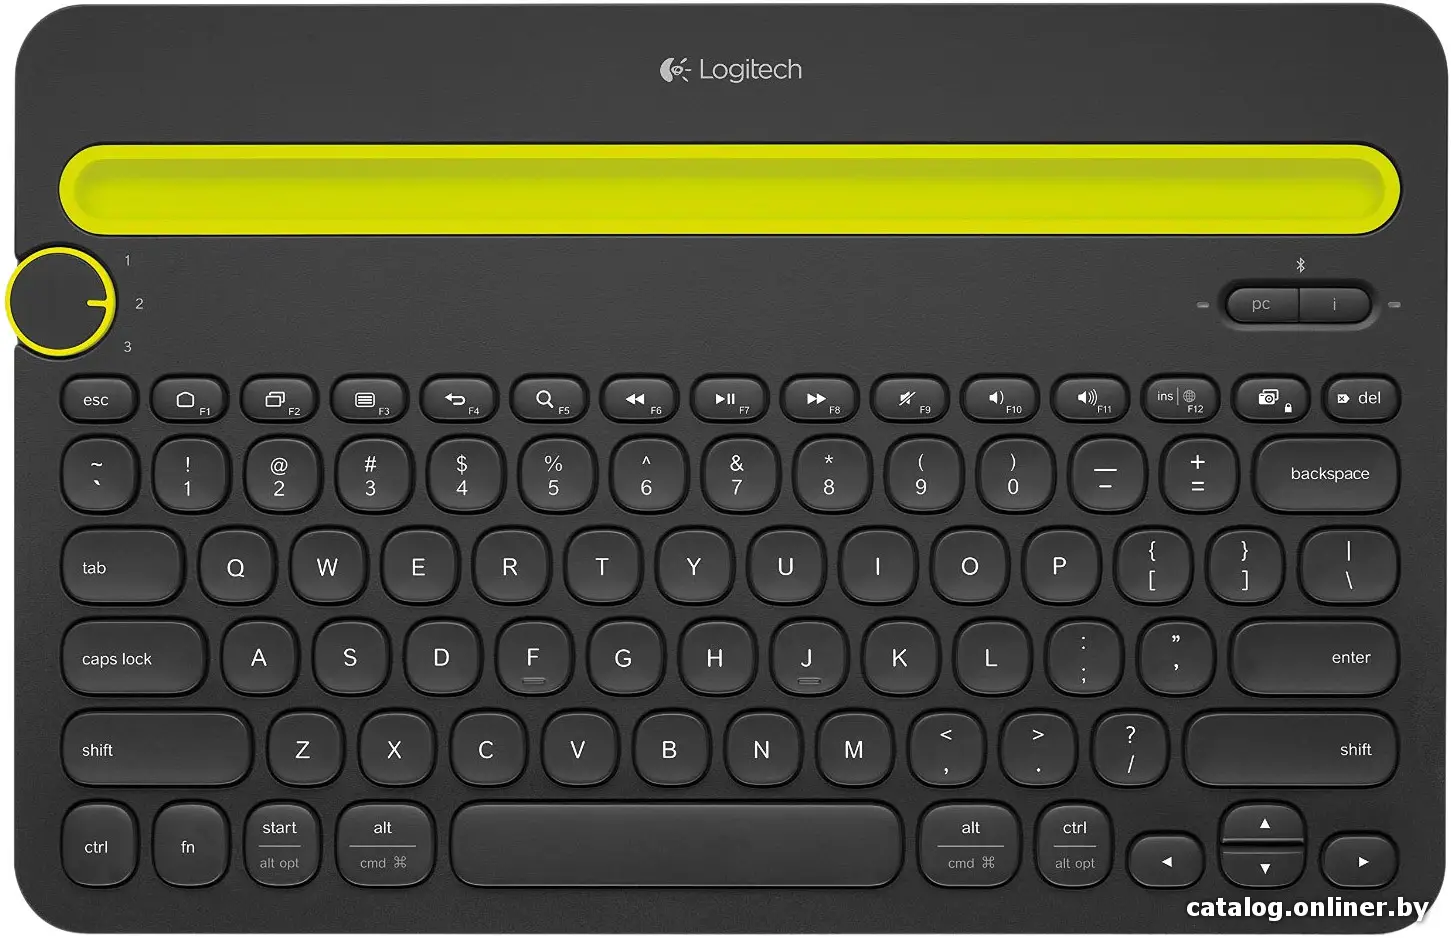 Купить Logitech Keyboard K480 Bluetooth Multi-Device <920-006368, Беспроводная, Bluetooth>, цена, опт и розница